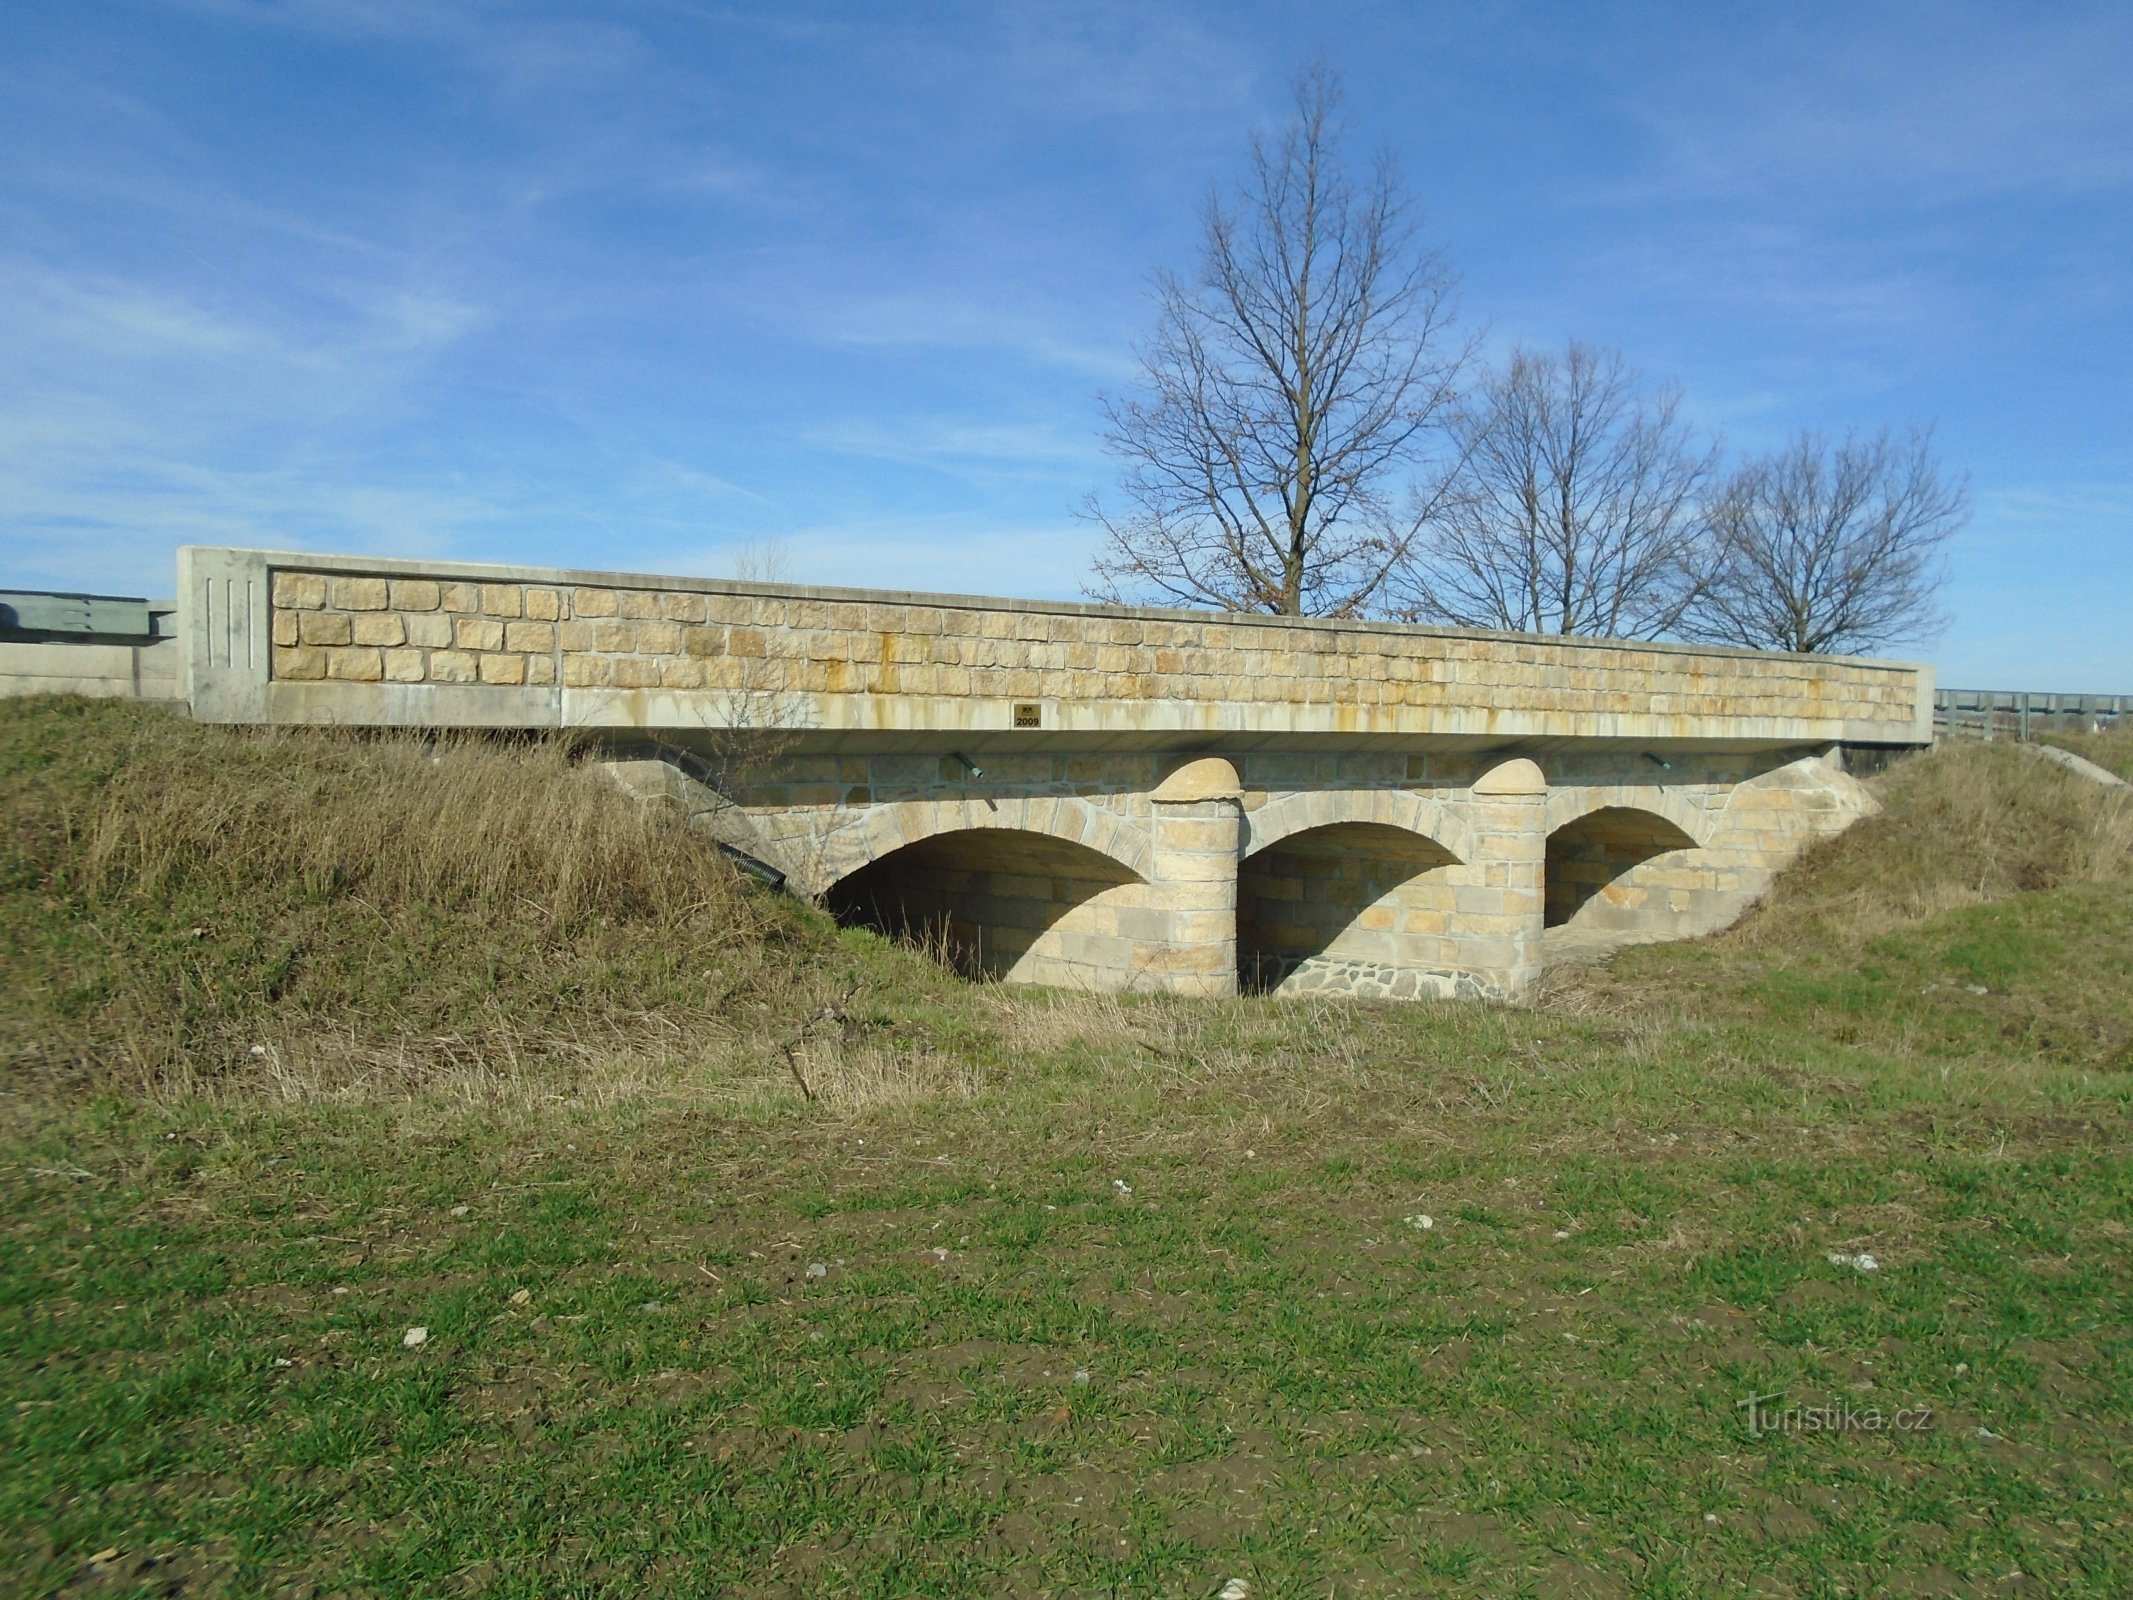 Cầu được bảo vệ bằng tượng đài (Bohumileč)